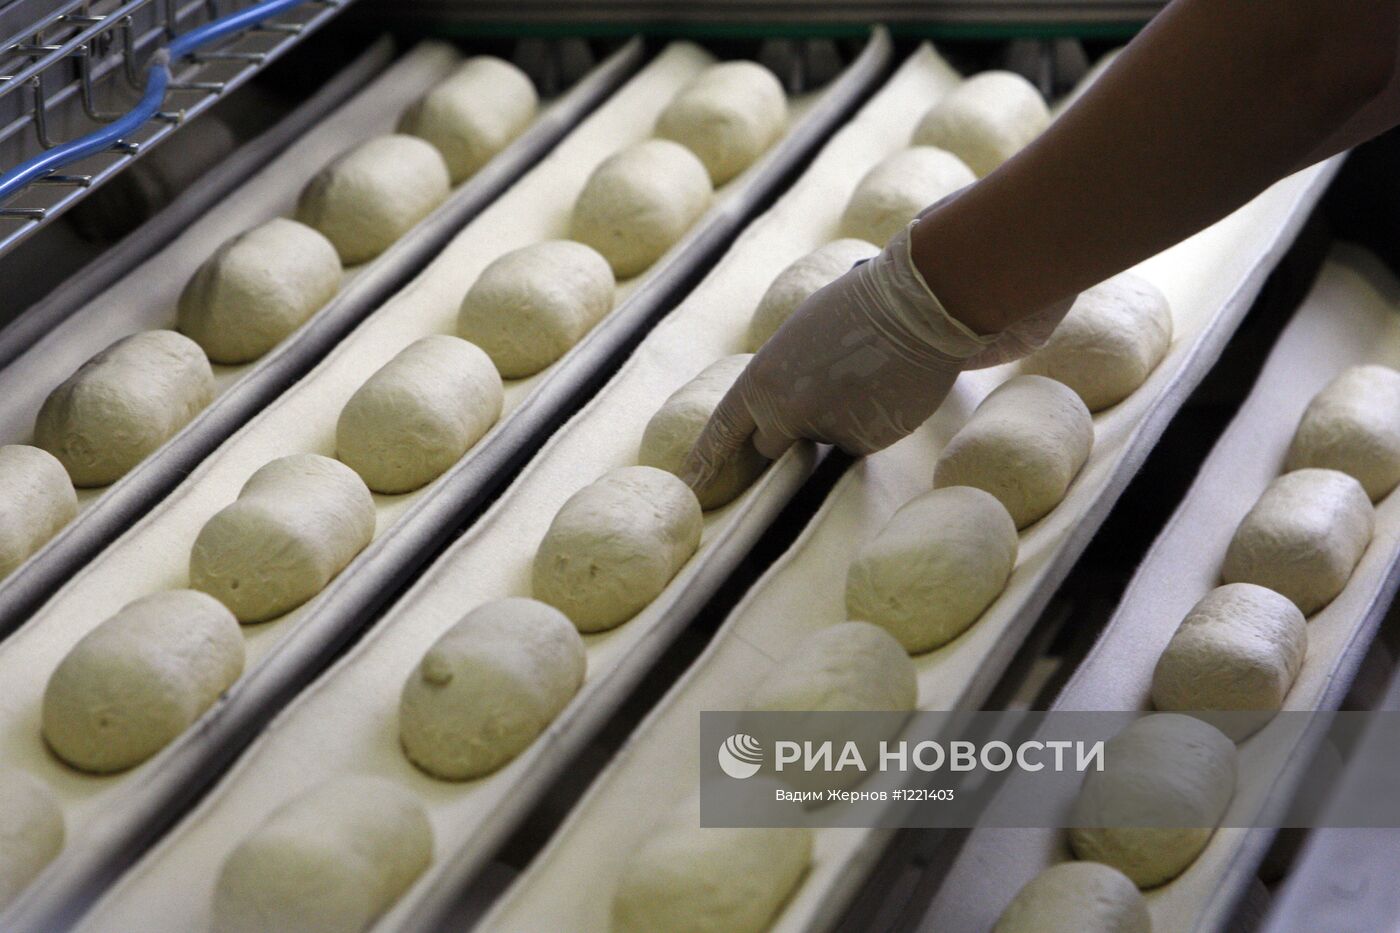 Производство хлебобулочной продукции на заводе "Каравай"